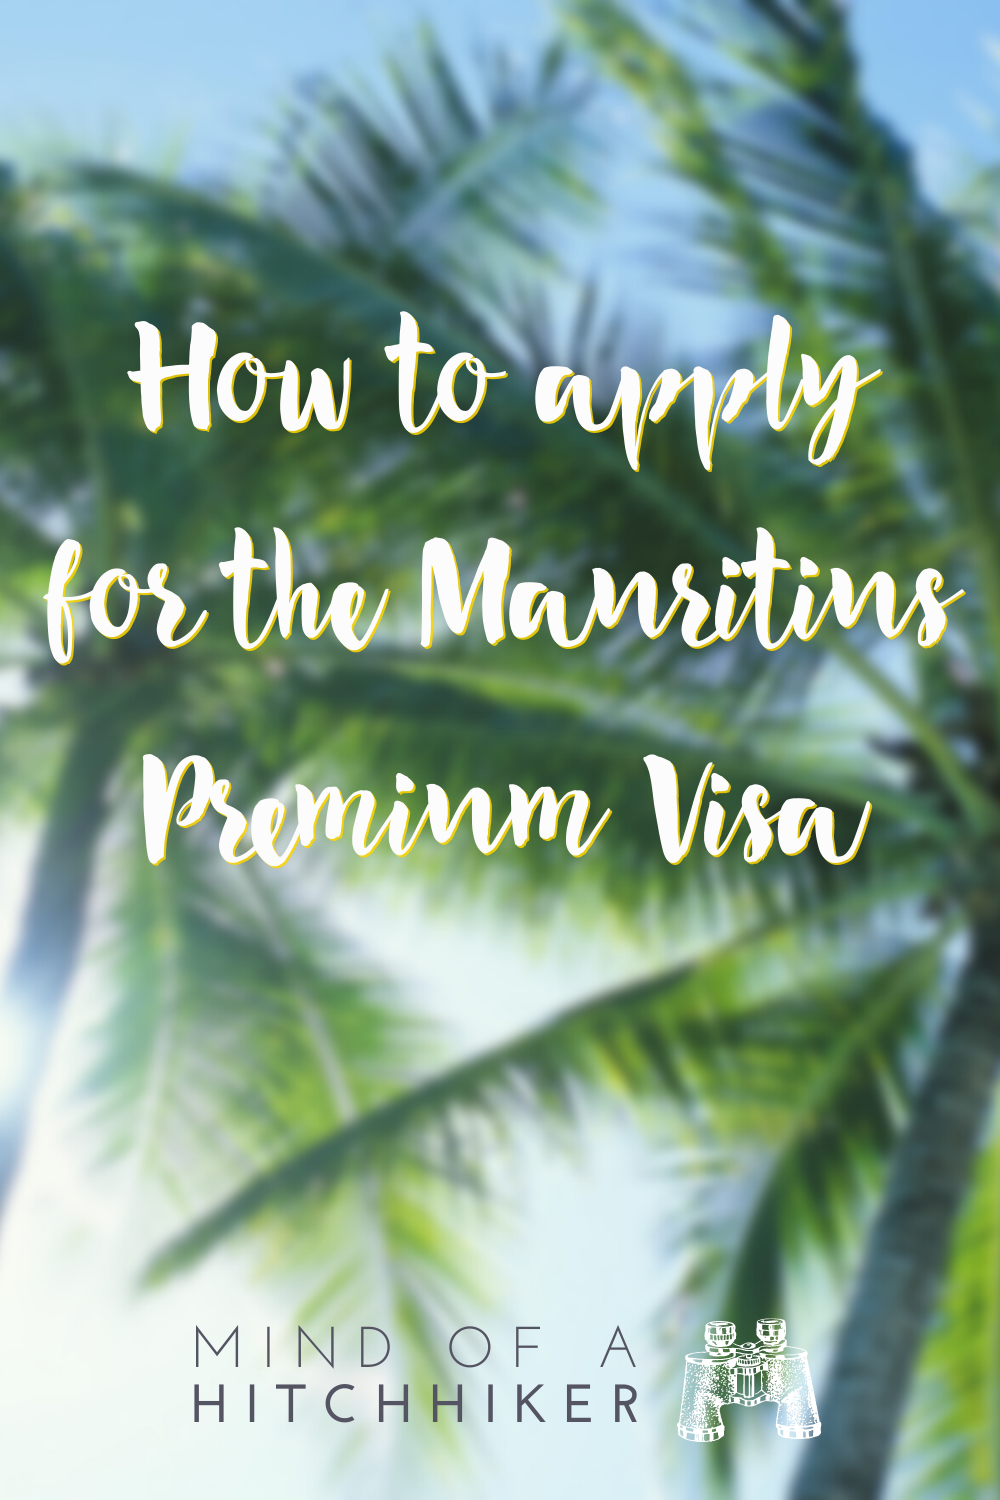 mauritius premium visa application online